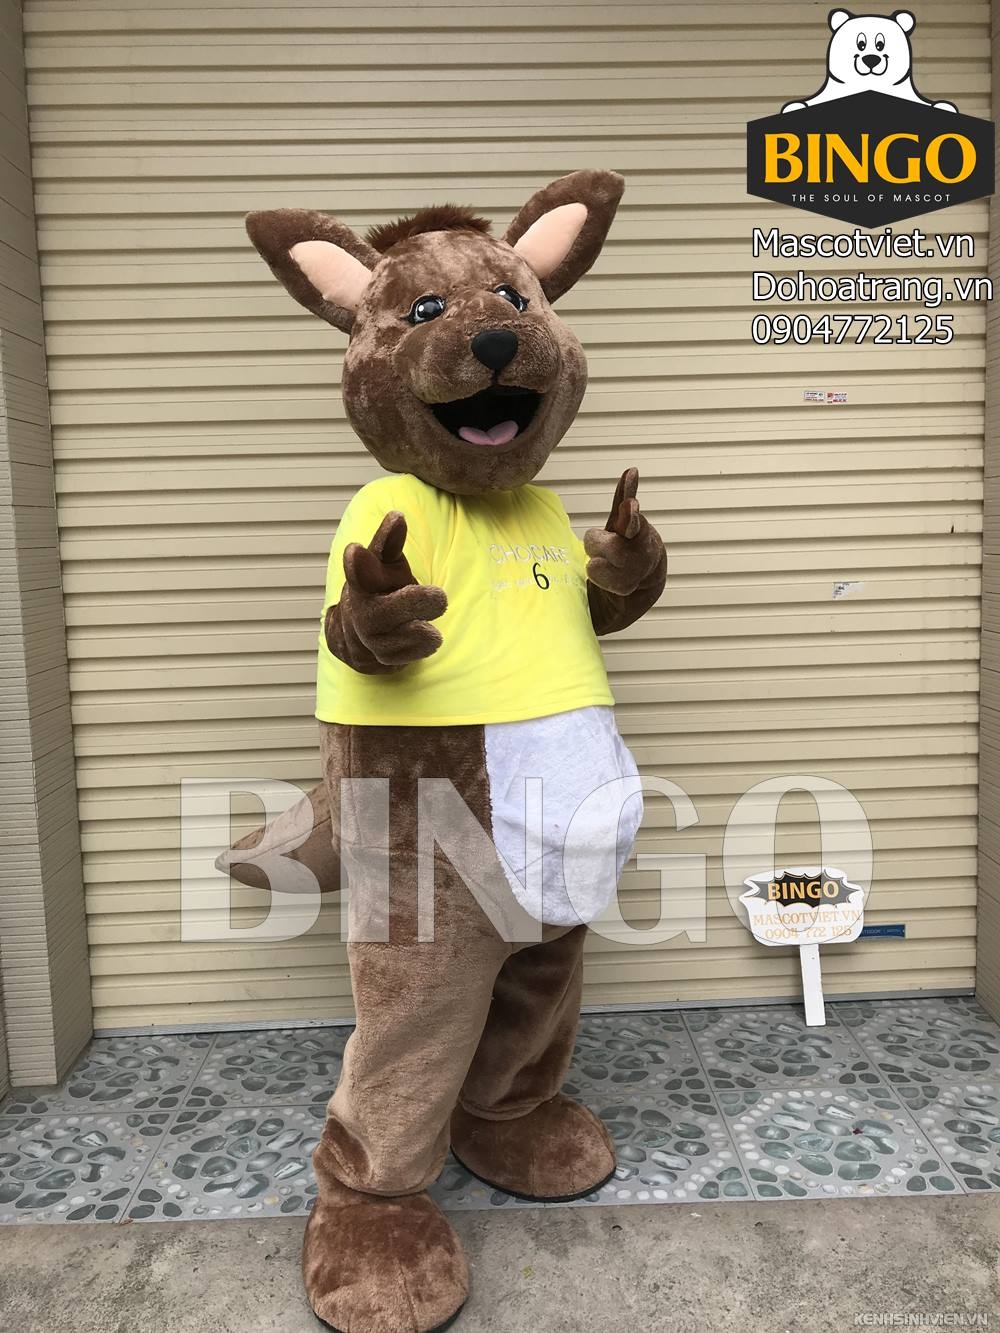 mascot-chuot-tui-kangaroo-bingo-costumes-0904772125-3-.jpg